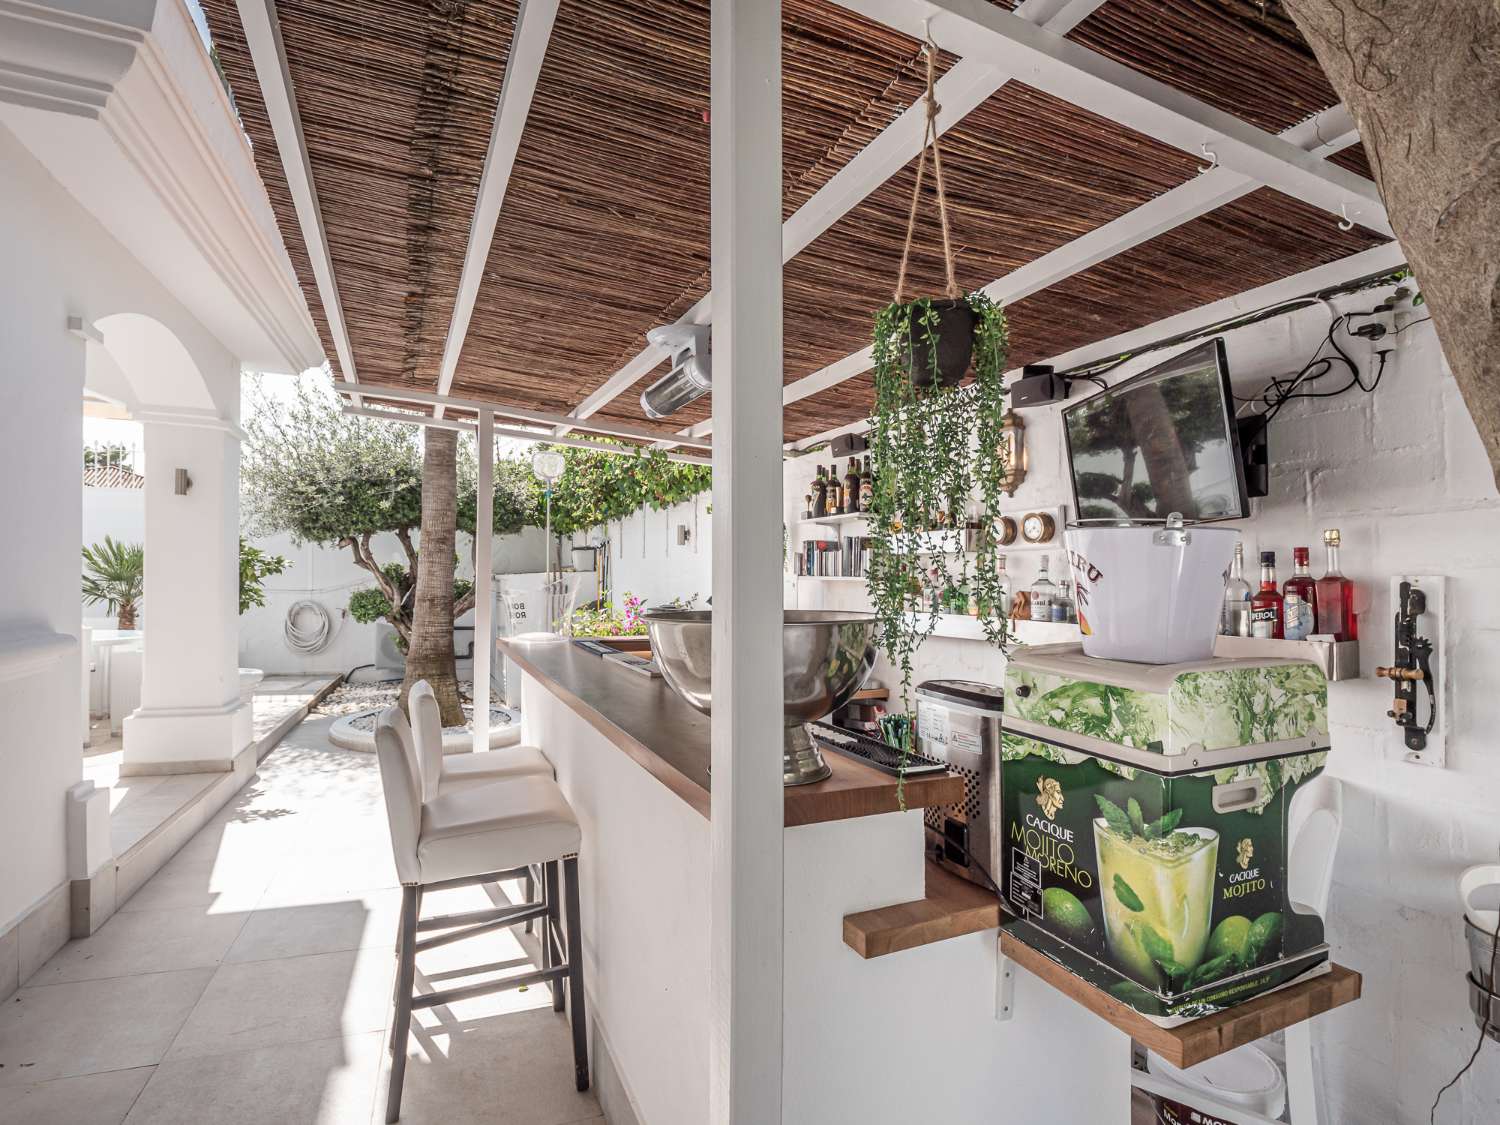 Design impeccabile e comfort attraverso! Prendi il tuo caffè e goditi il caldo stile casalingo dell'Andalusia!